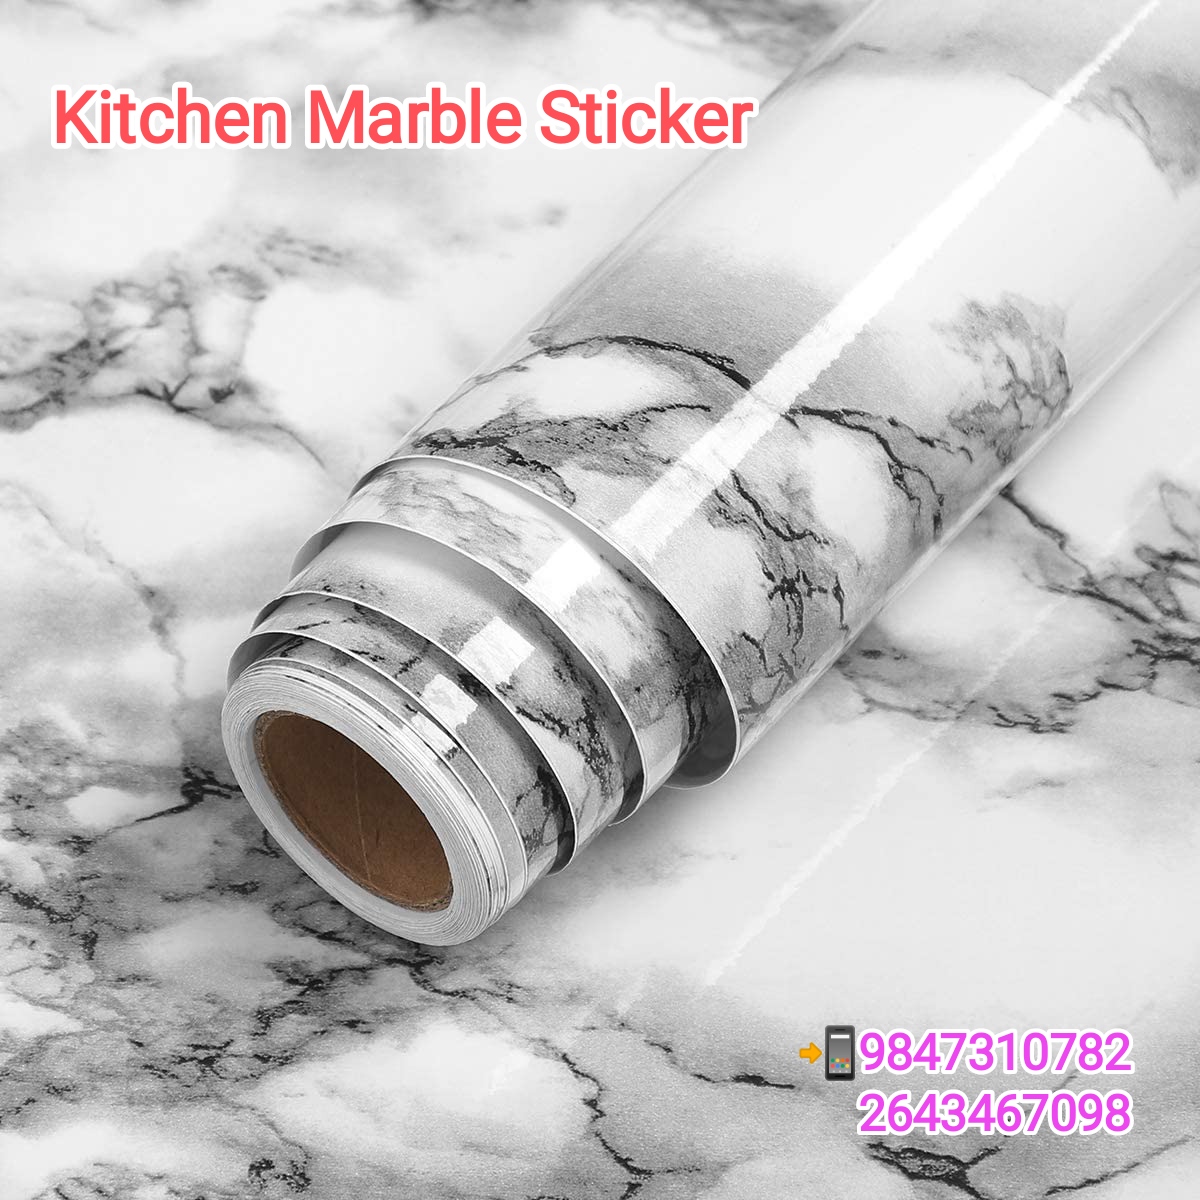 Kitchen Marble Sticker